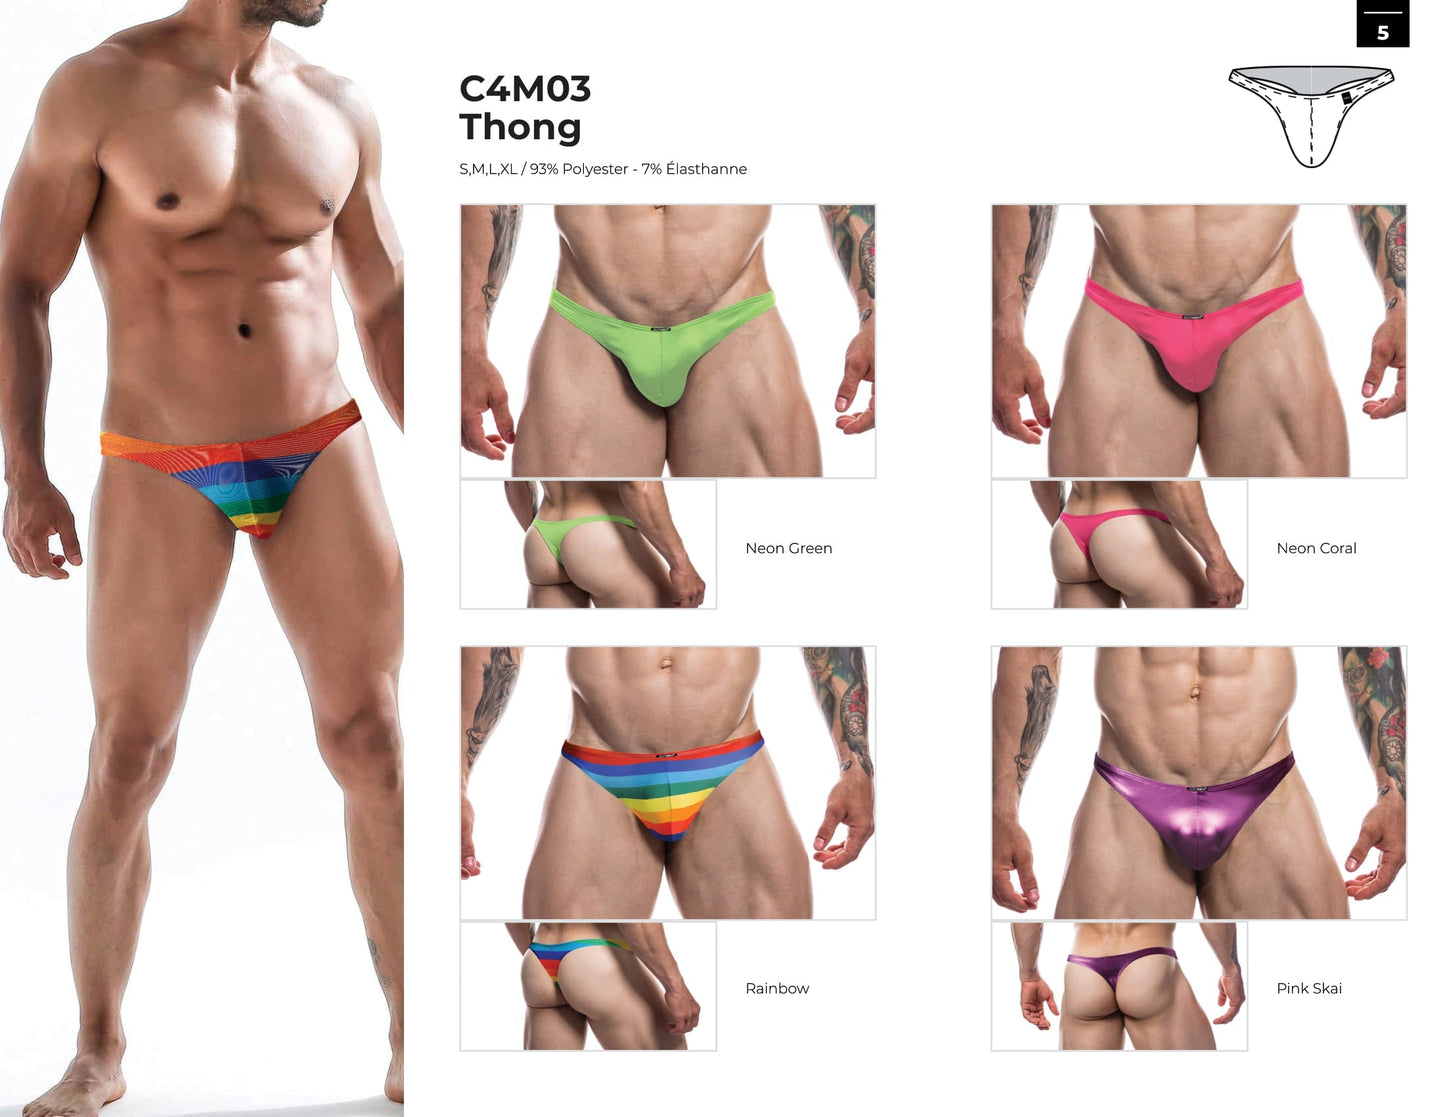 CUT4MEN - C4M03 - Thong Men Underwear - Neon Green - 4 Sizes - 1 Piece